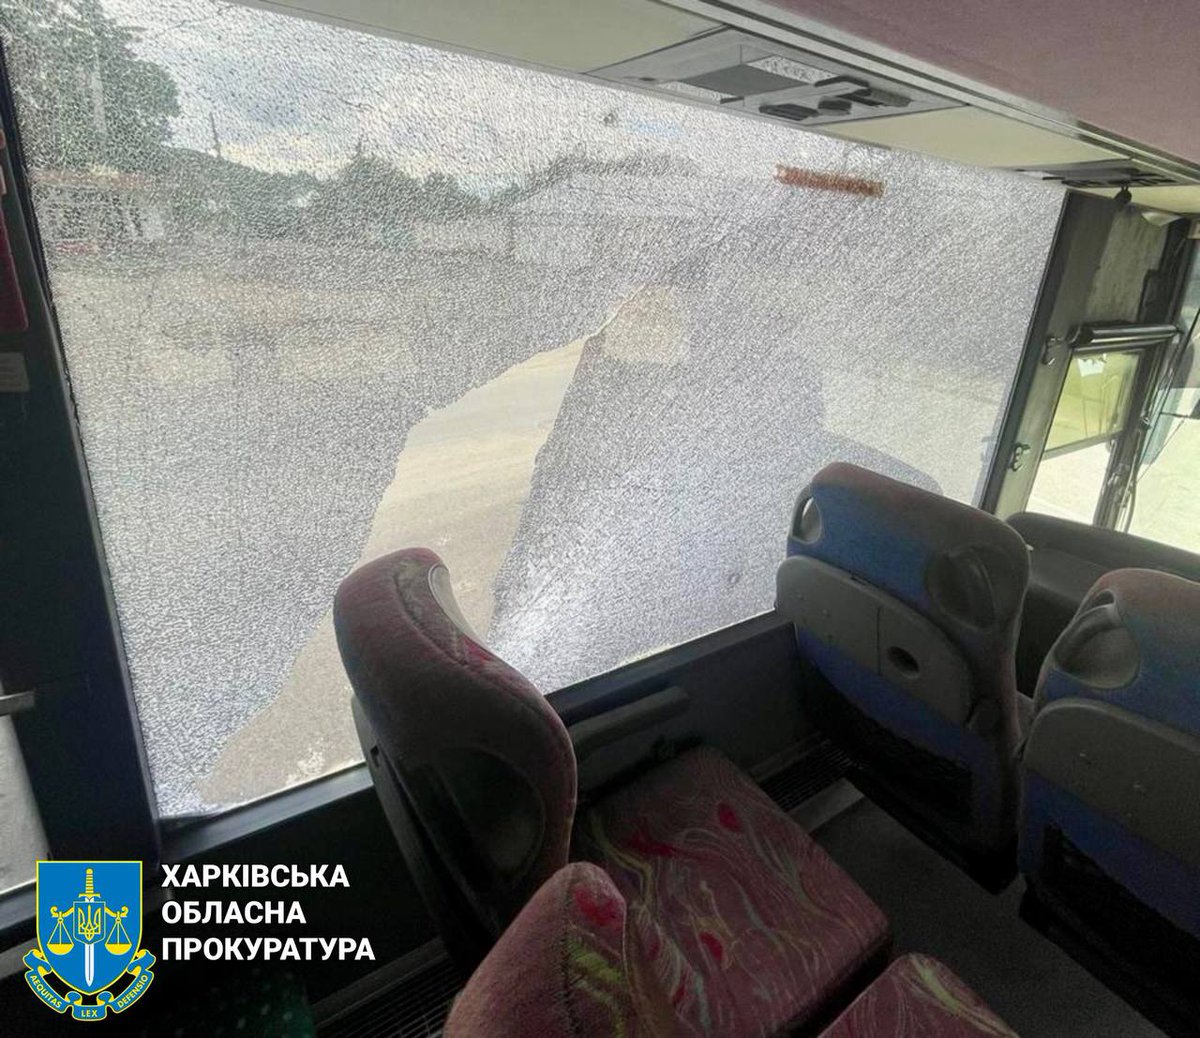 3 زخمی از جمله 2 پلیس در نتیجه حمله پهپادی دیروز در کوپیانسک